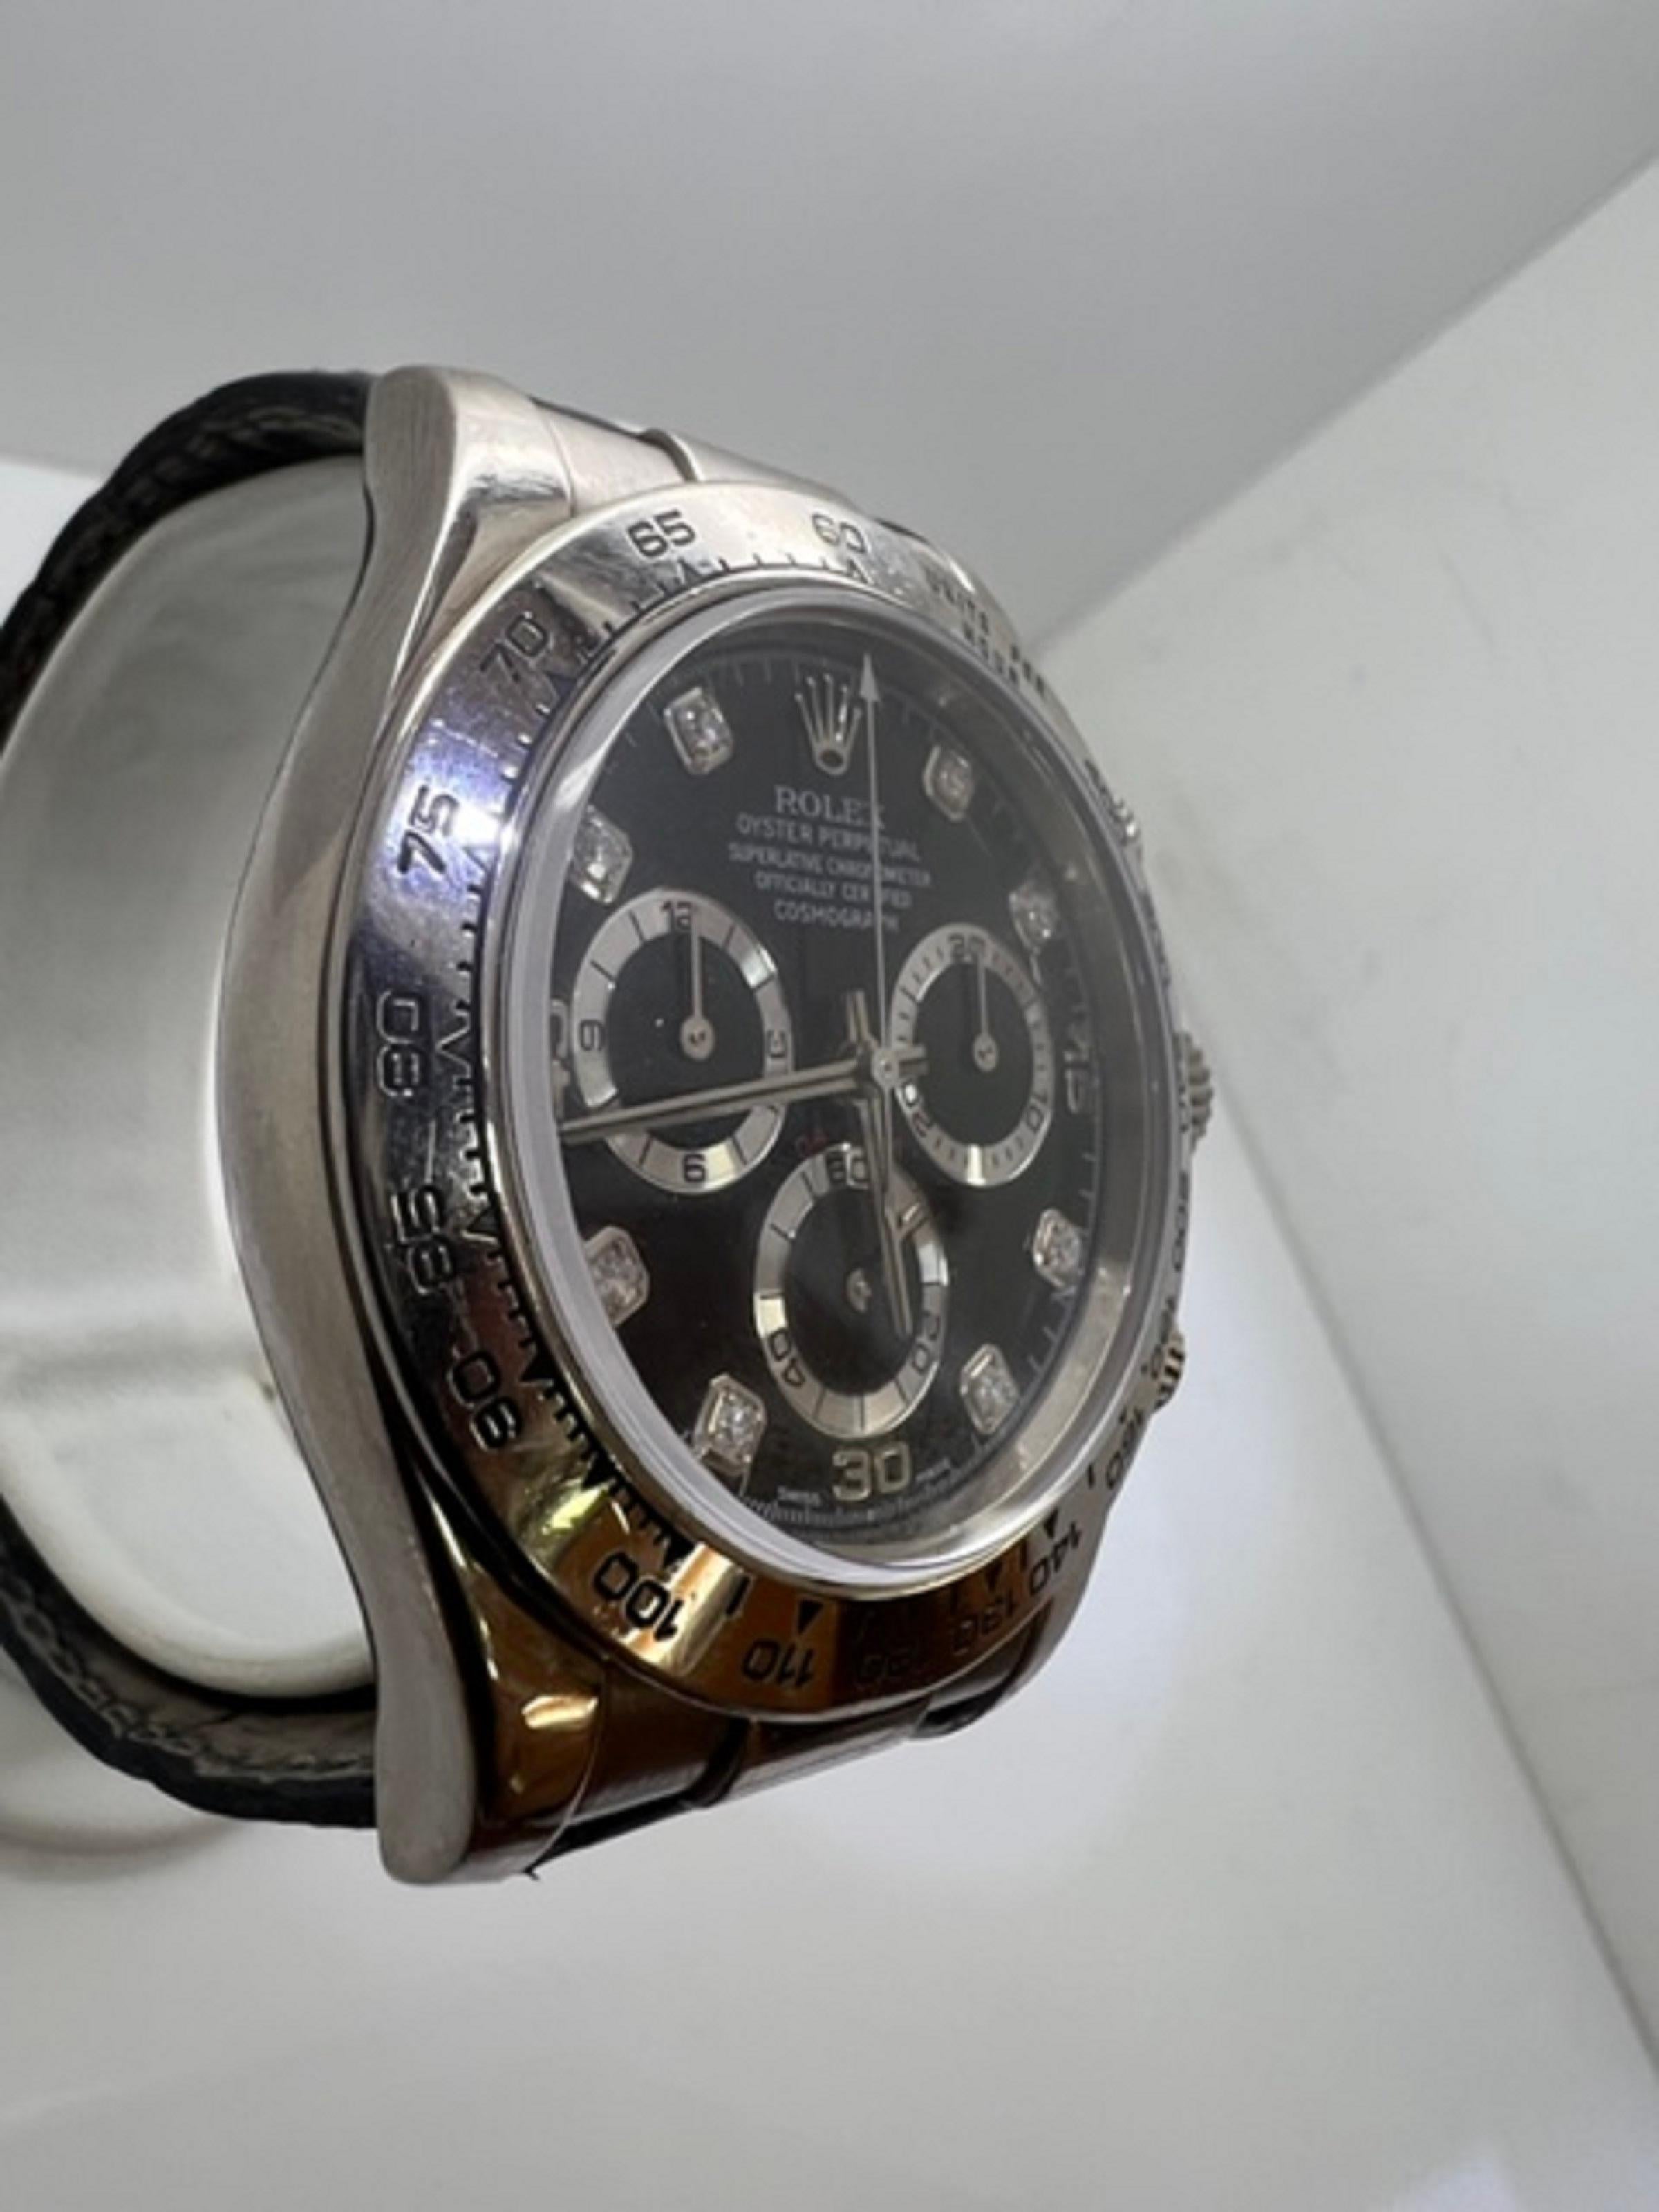 Rolex Daytona Schwarzes Diamant-Zifferblatt Herrenuhr

ausgezeichneter Zustand

Diese Uhr ist 100% original Rolex

Original Rolex Box & Broschüren 

Einkaufen mit Zuversicht 

5 Jahre Garantie

